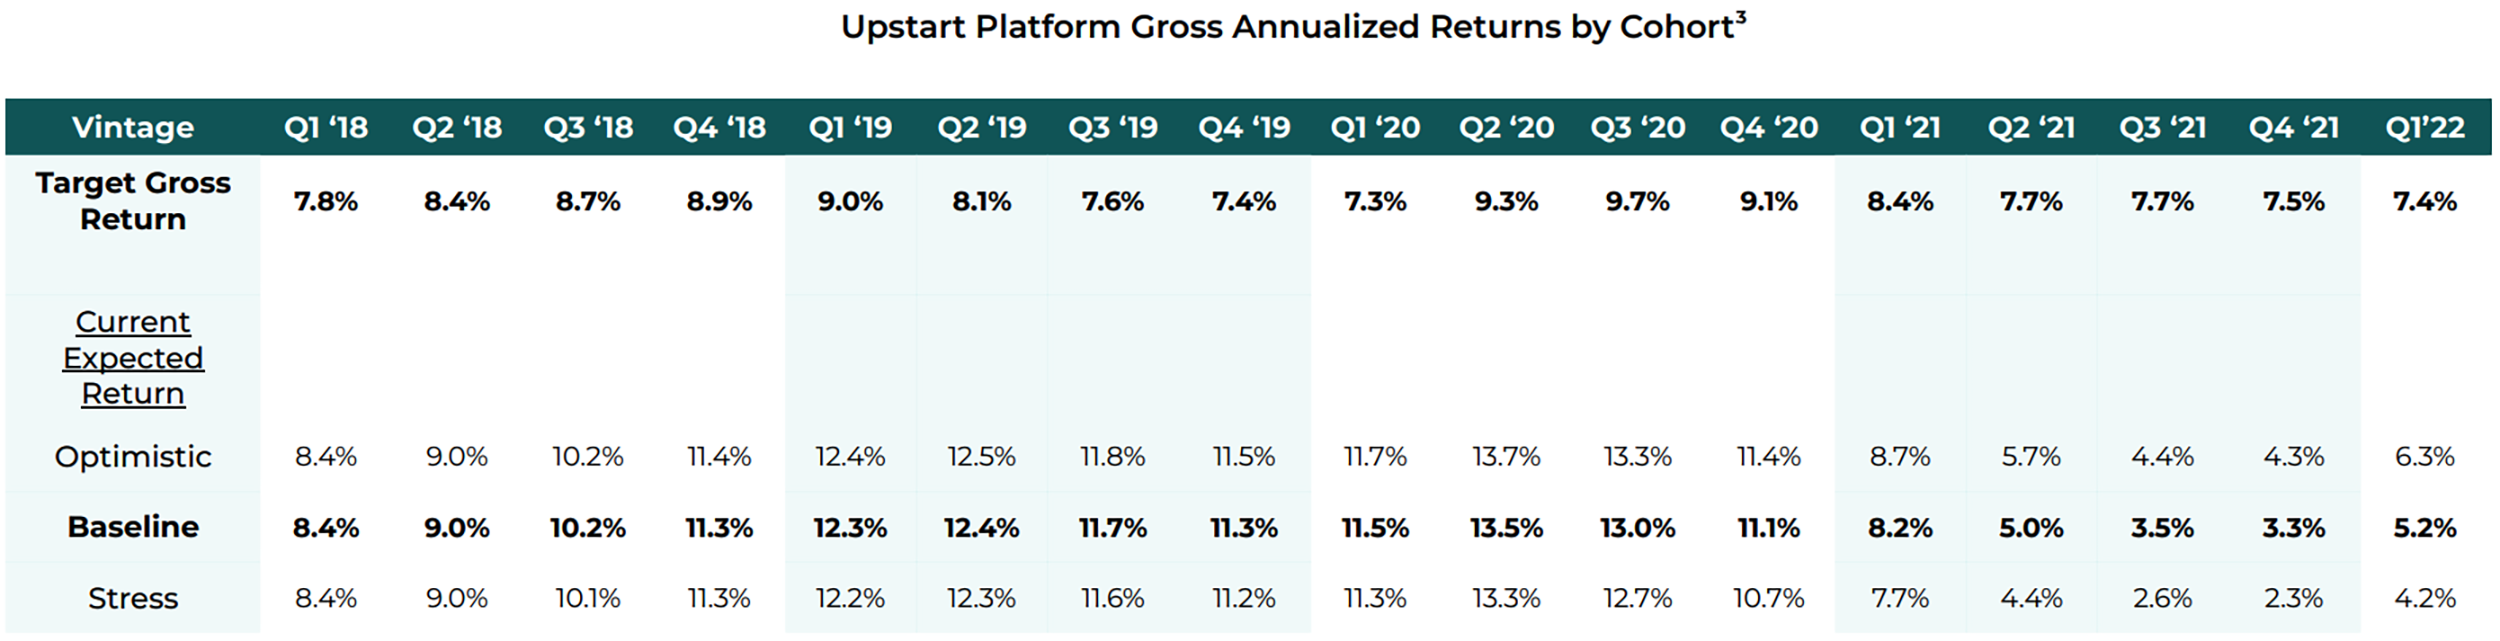 Upstart Platform Gross Annnalized Returns By Cohort